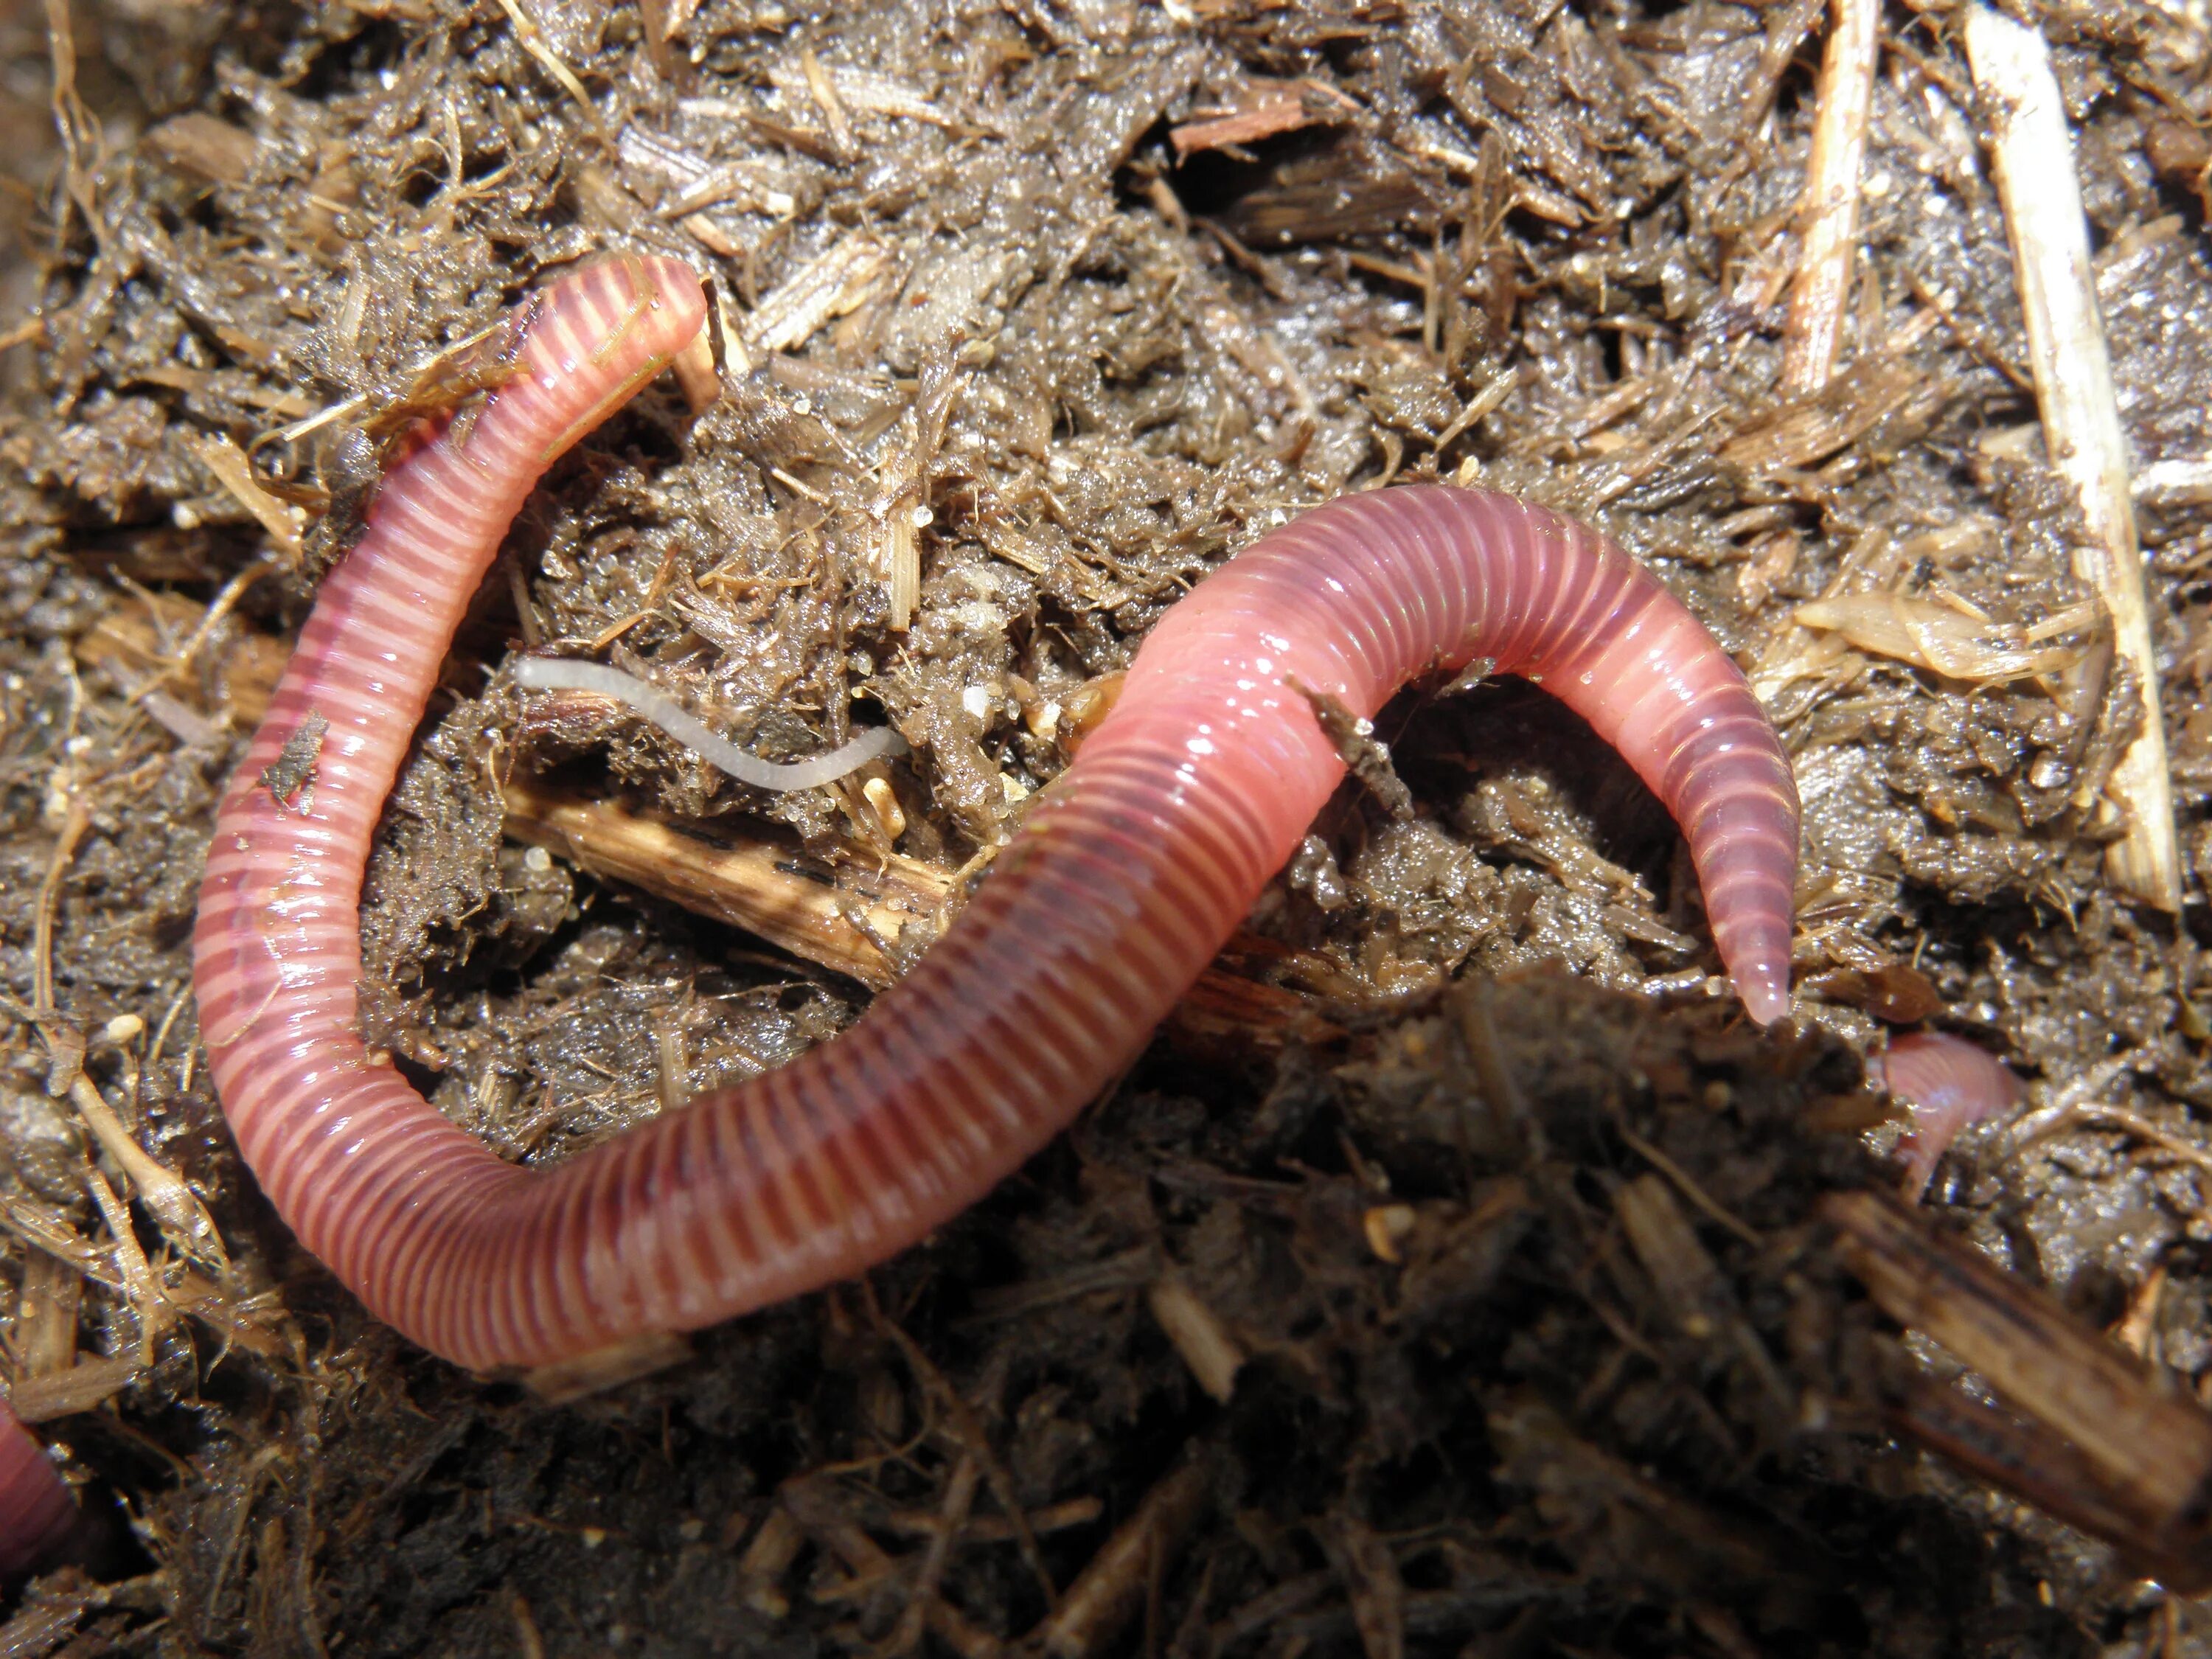 Части дождевого червя. Малошетниковфй крльчатые черви. Малощетинковые кольчатые черви. Кольчатые черви черви.